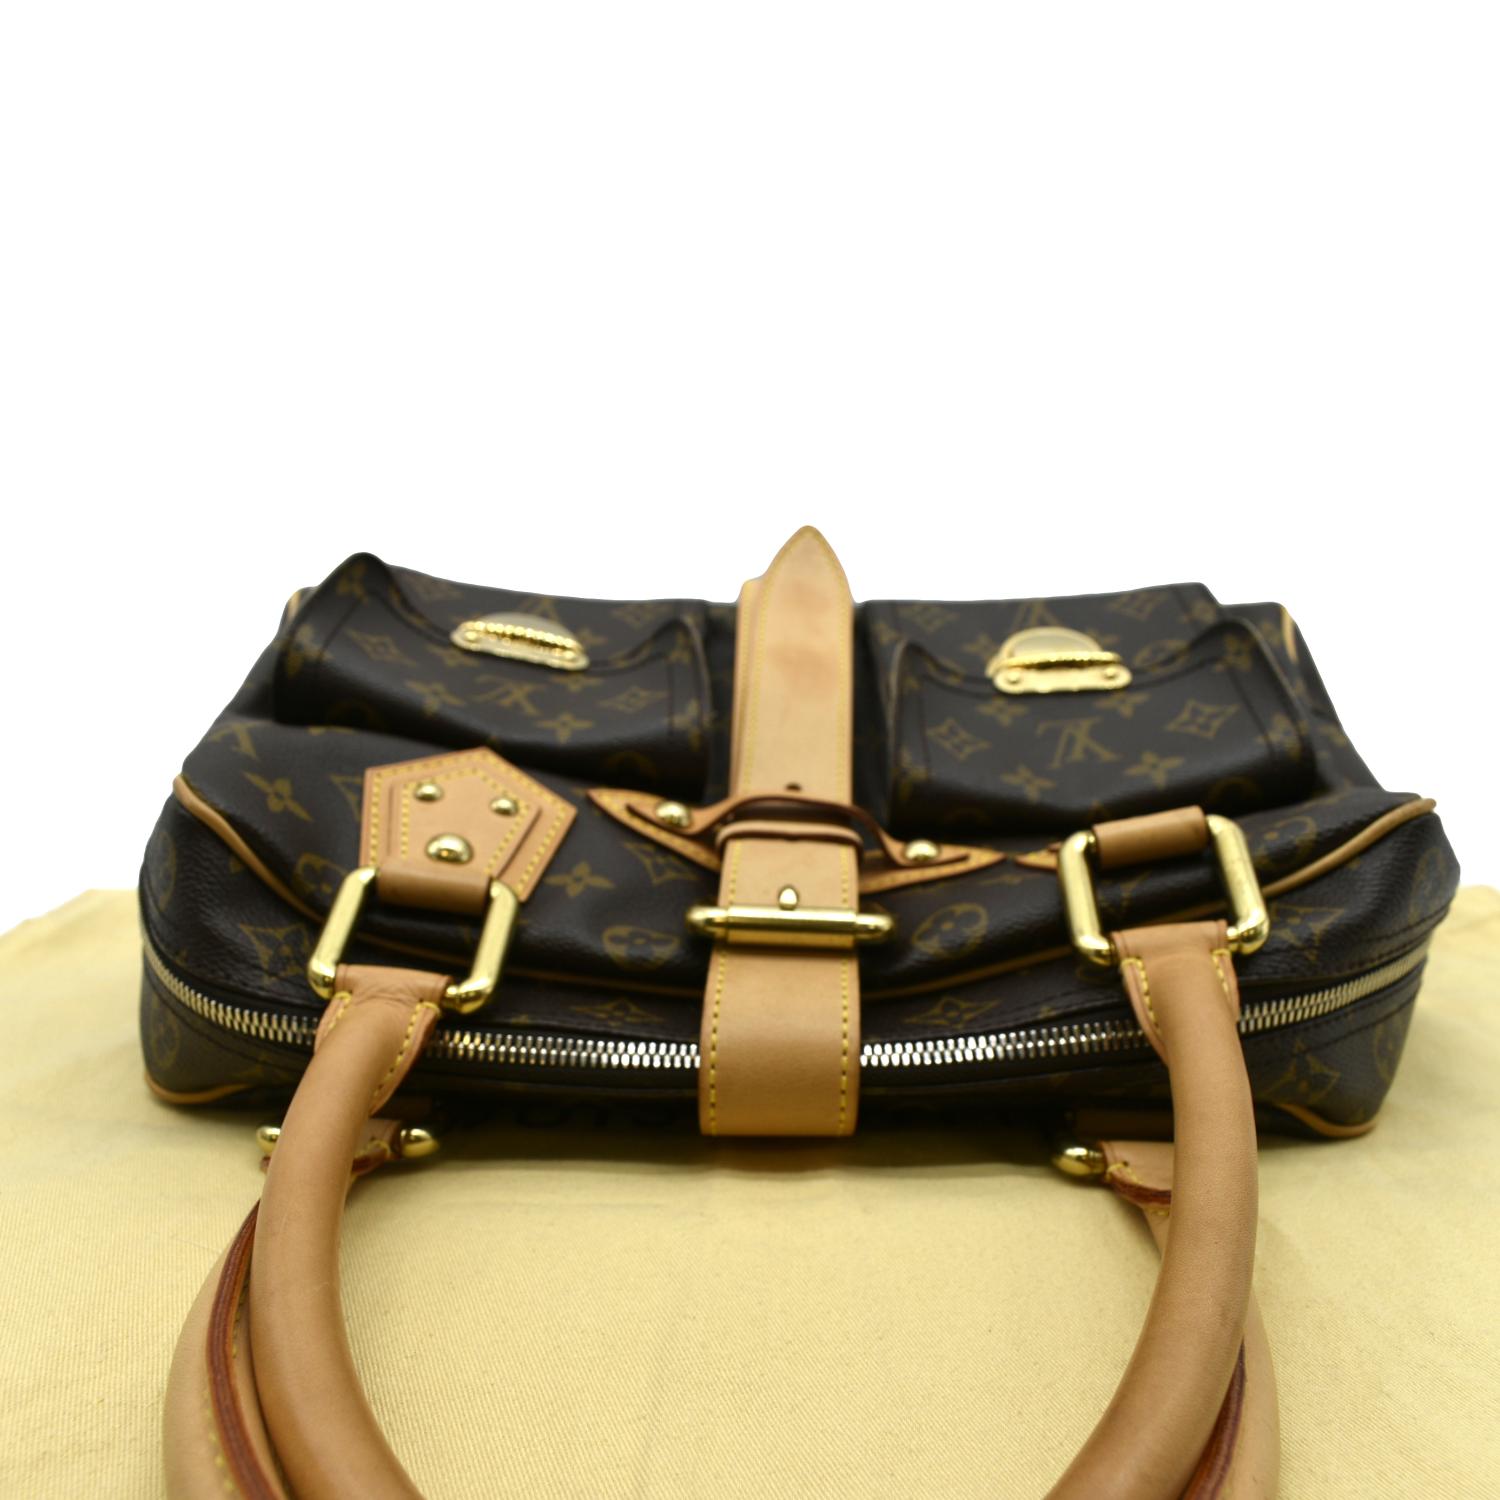 Manhattan cloth handbag Louis Vuitton Brown in Cloth - 18702540